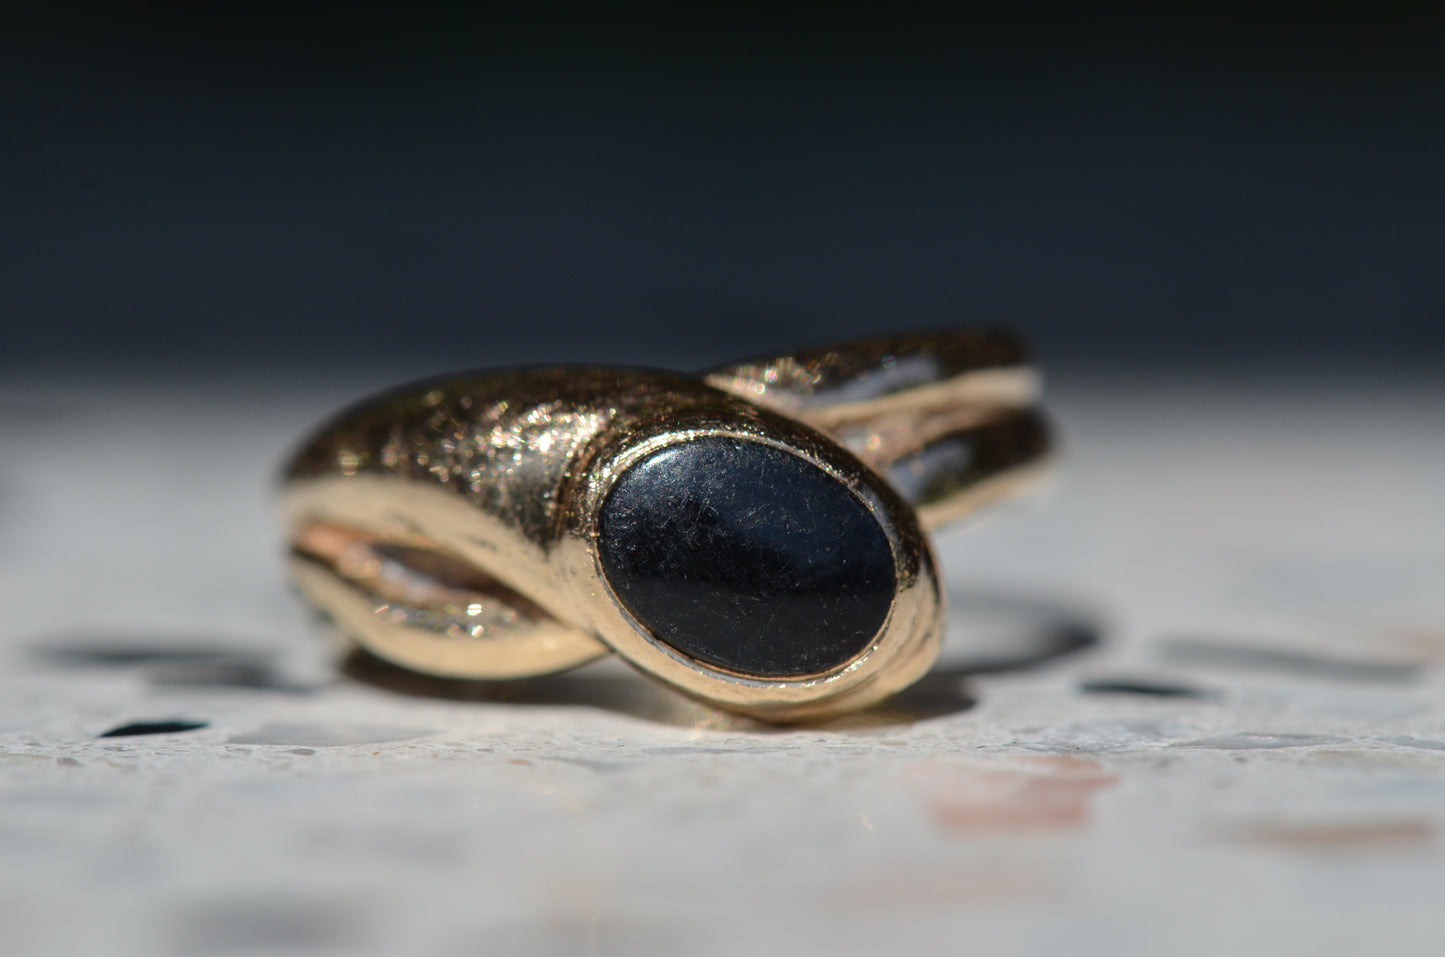 Subtle Vintage Onyx Snake Ring